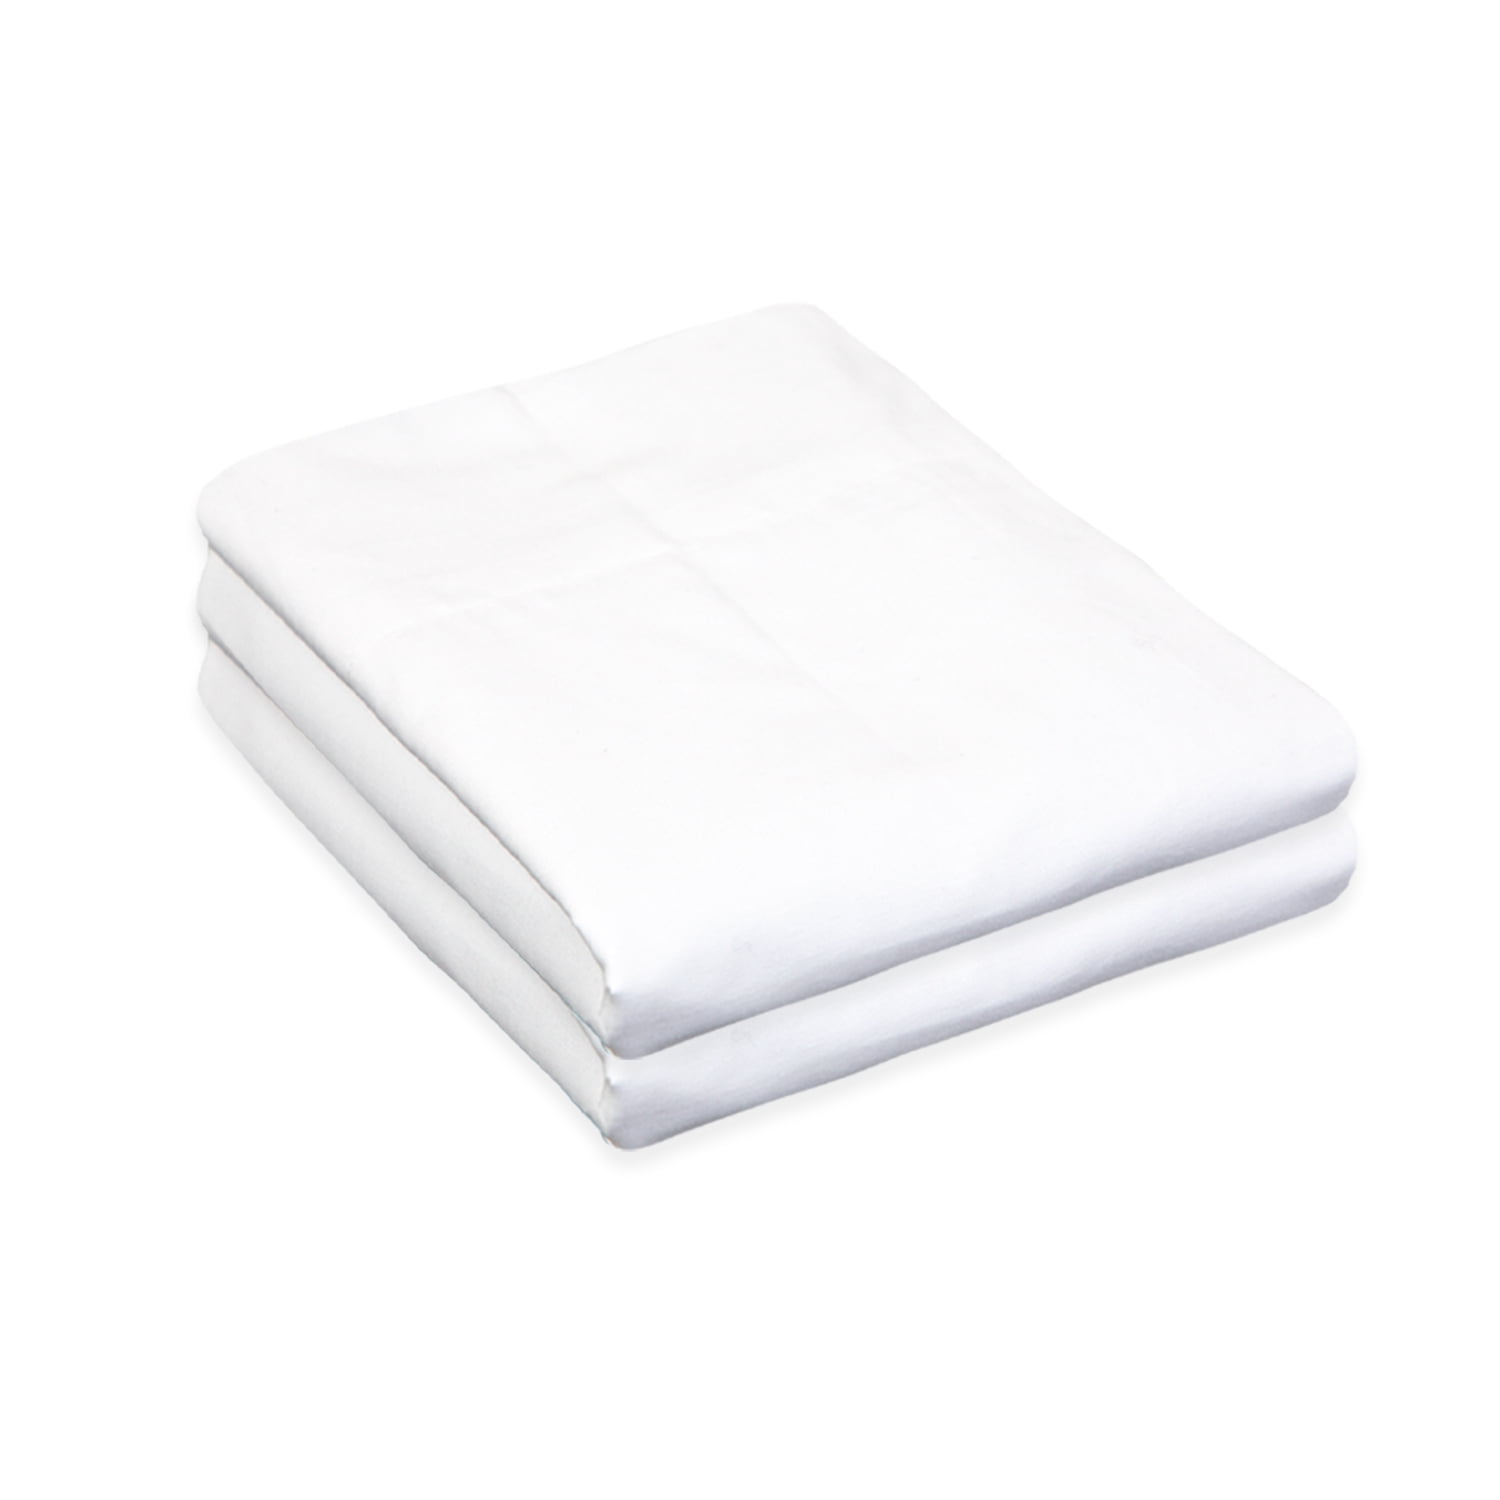 2 new white king size hotel pillowcases 20x40 t180 threadcount 100% cotton 